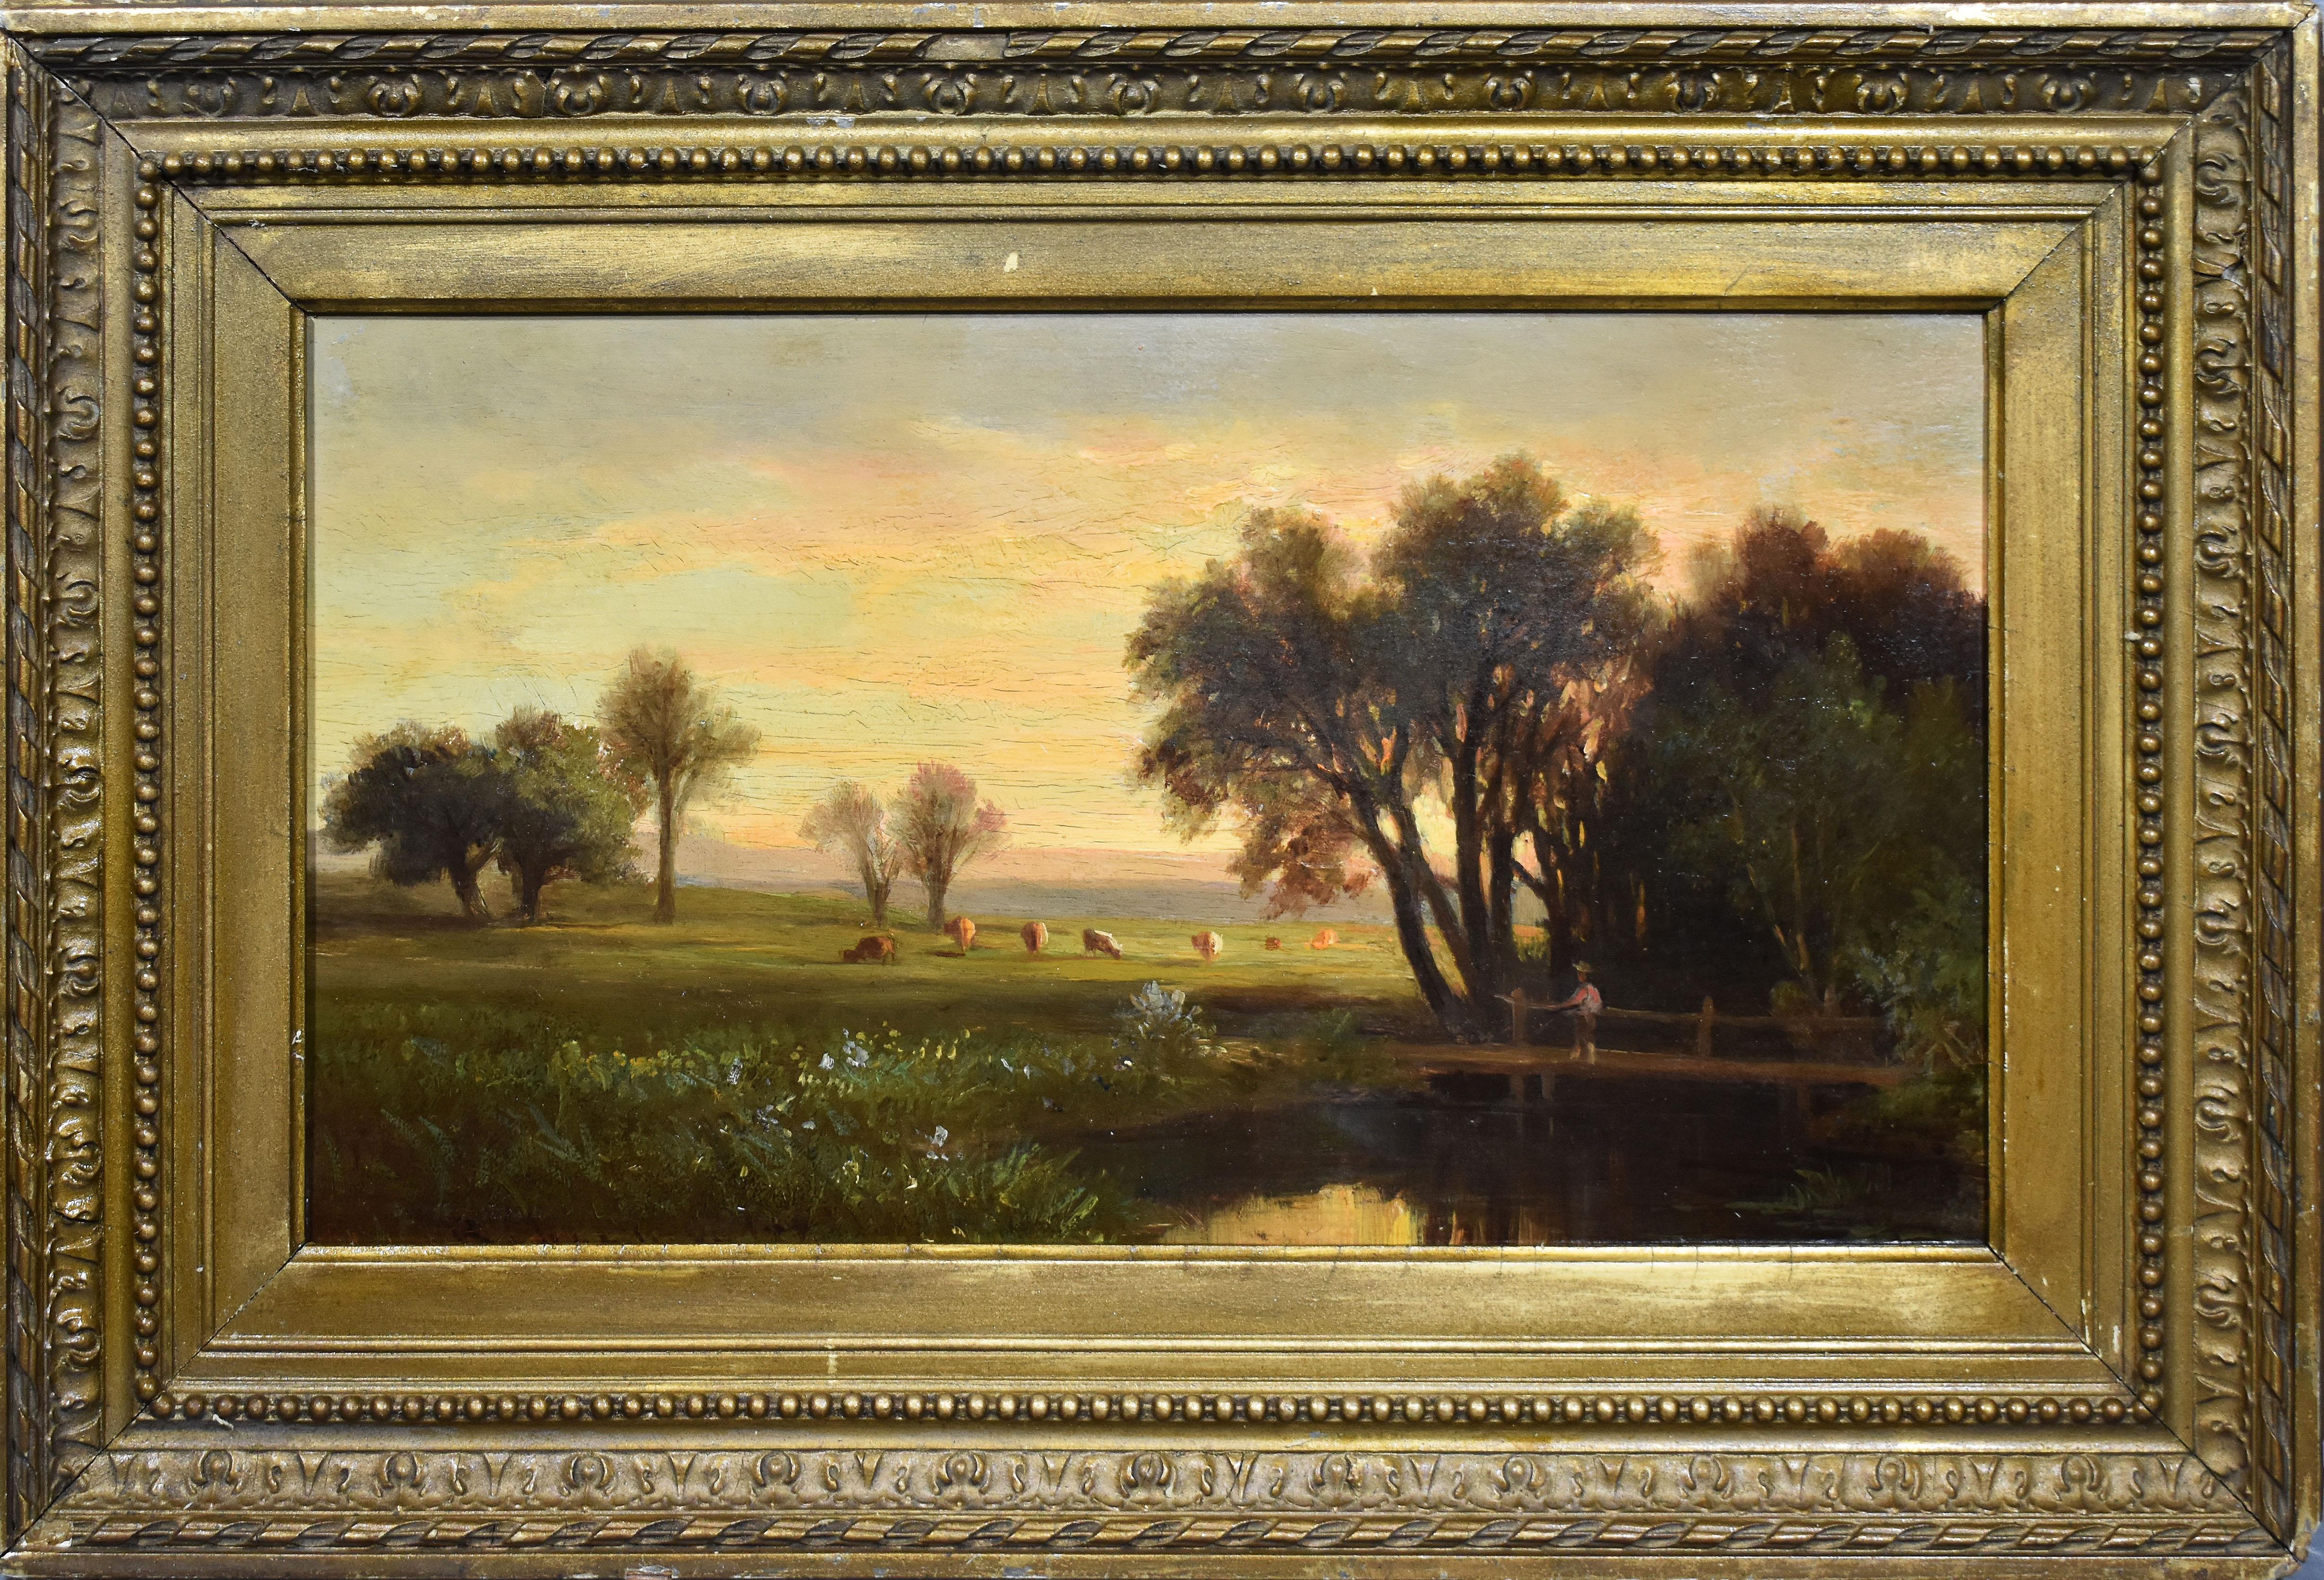 Benjamin Champney Portrait Painting - Antique American Hudson River School Landscape Sunset Cows & Figure Oil Painting